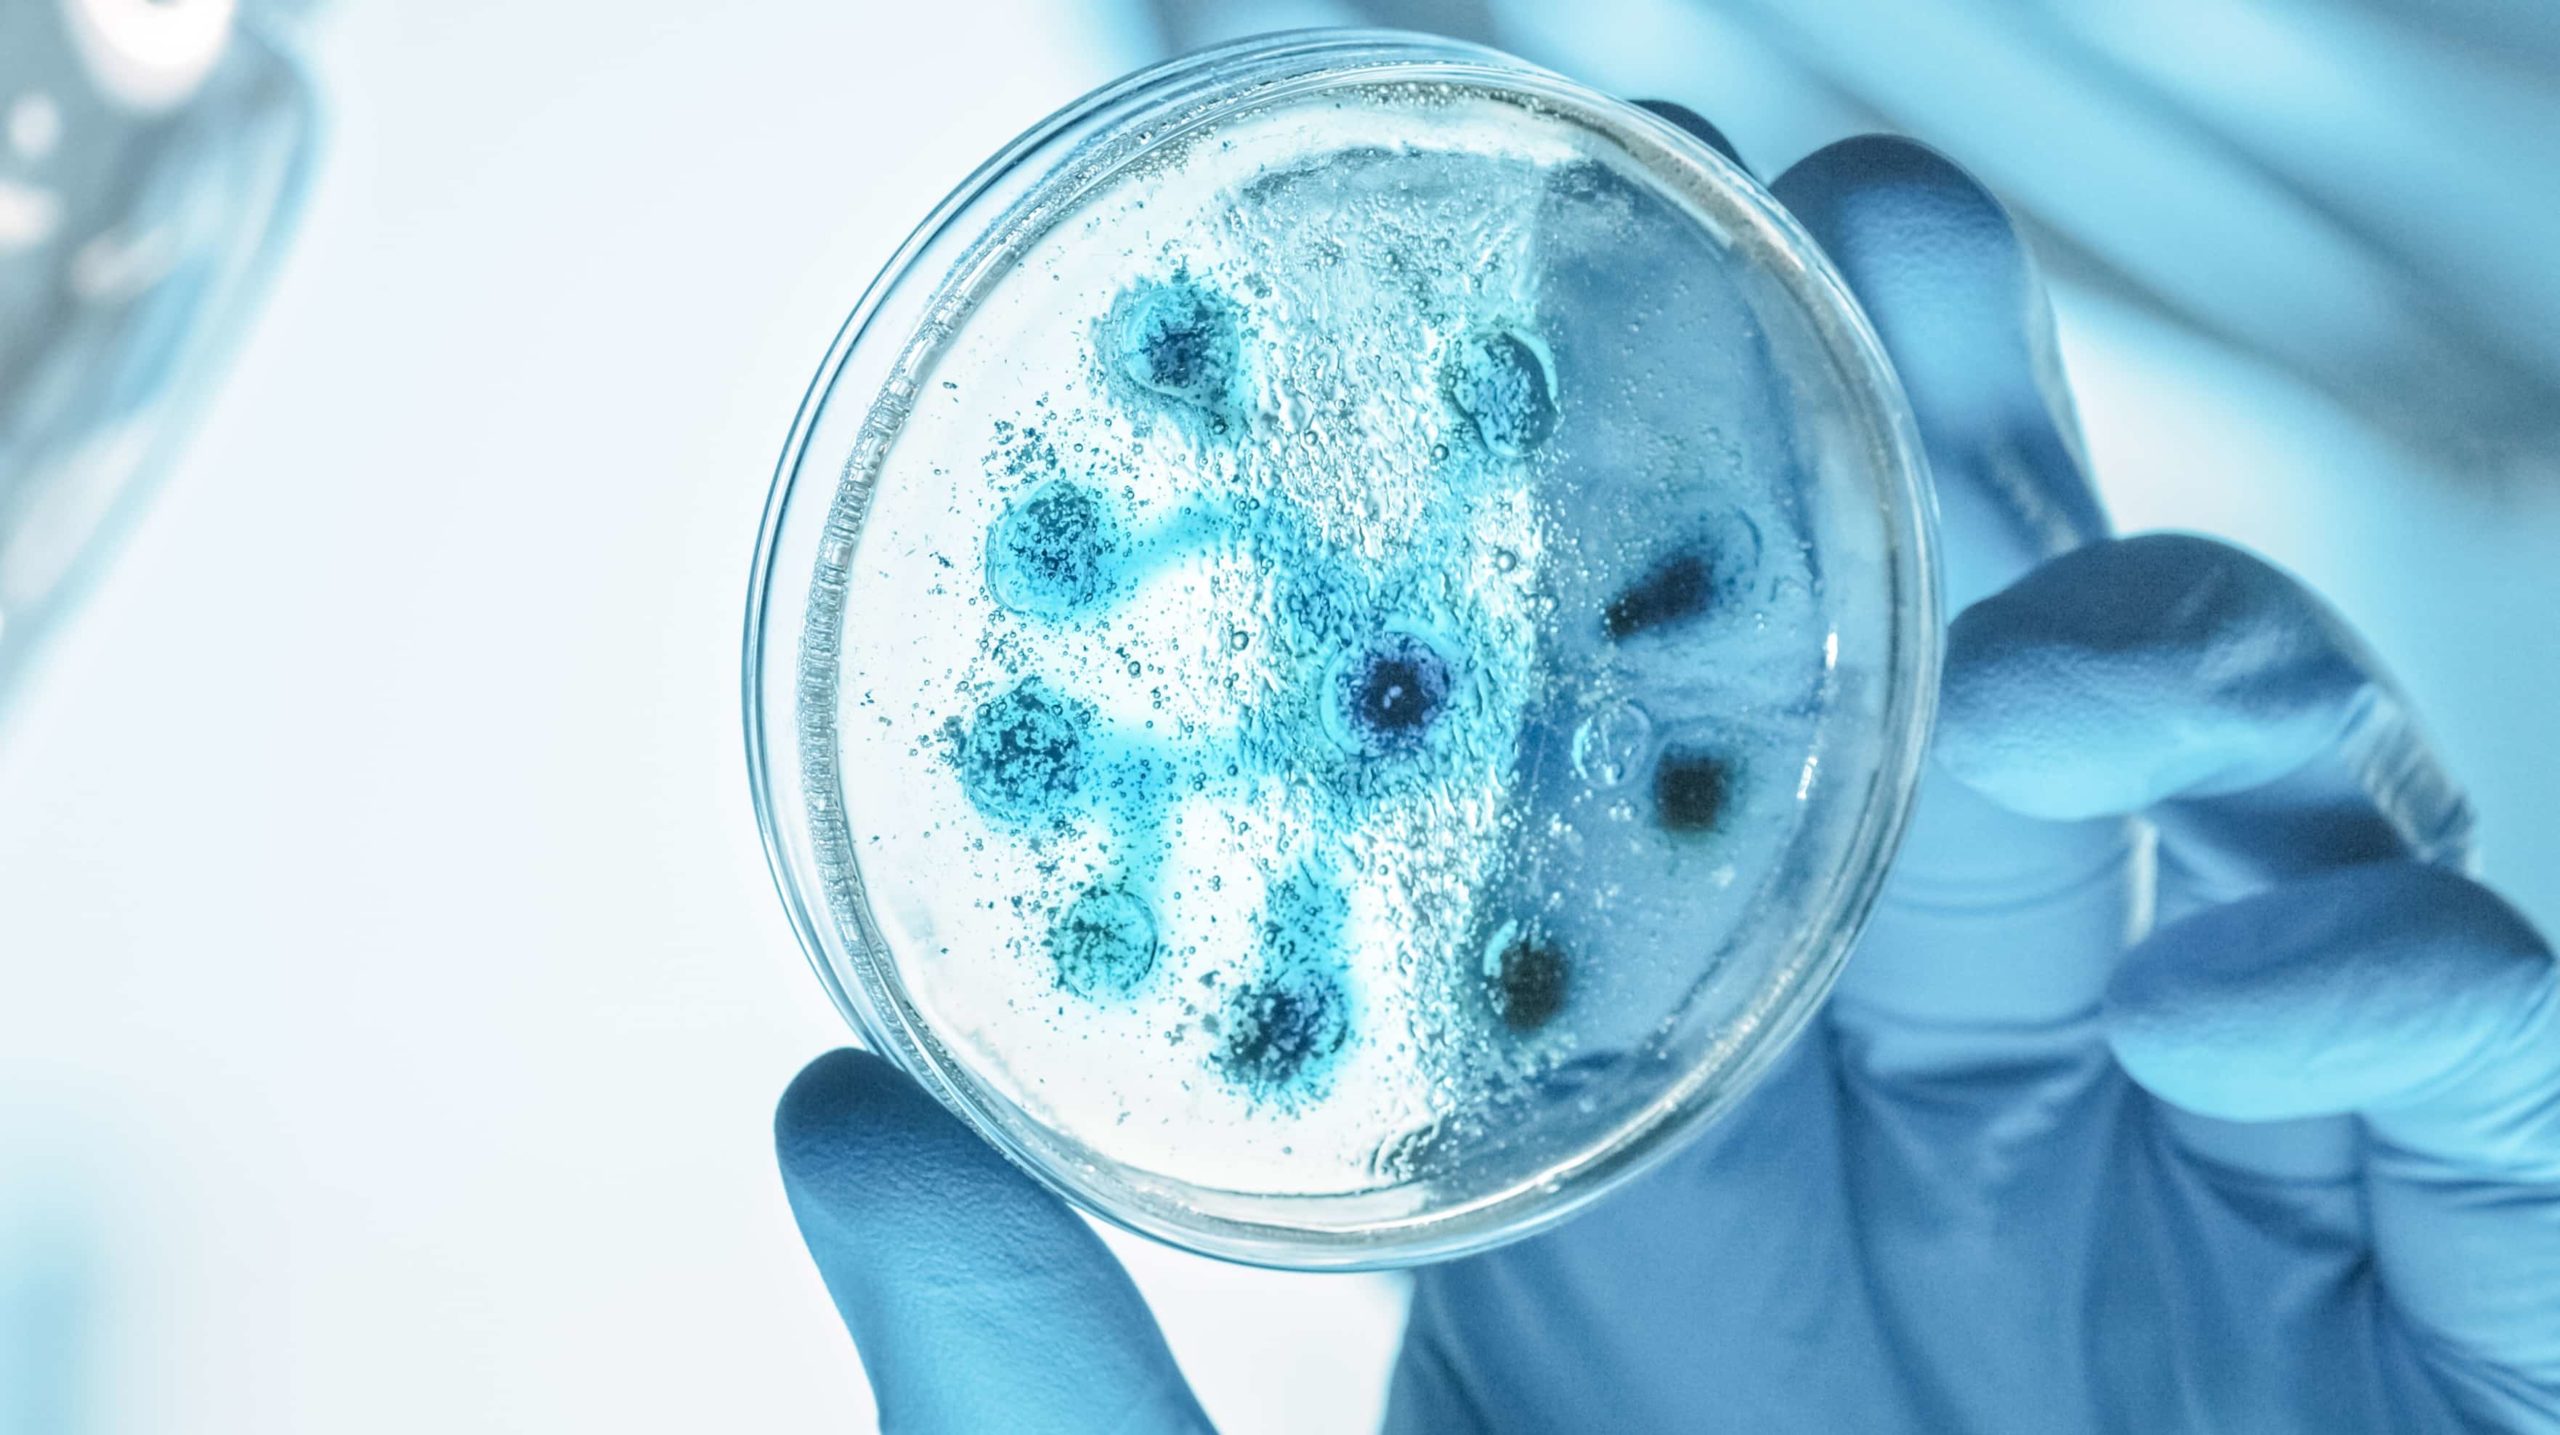 Close-up of petri dish